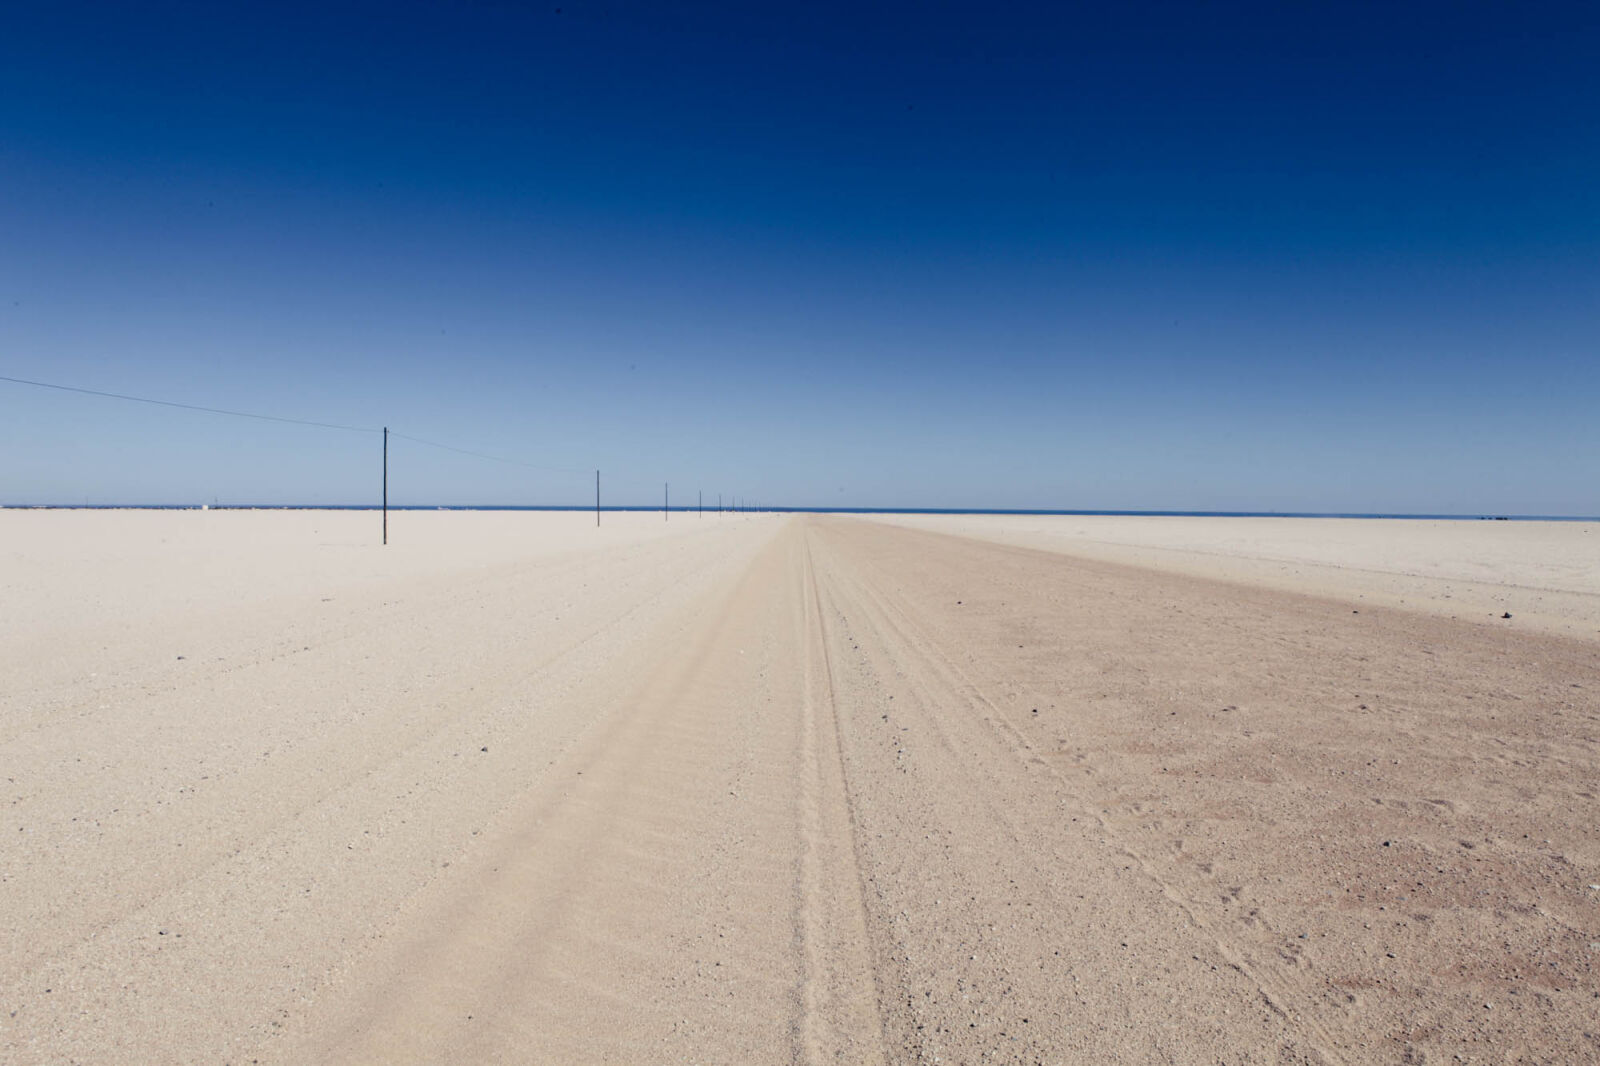 Canon EOS 5D Mark II + Canon EF 24-70mm F2.8L USM sample photo. Blue, sky, desert, desert photography